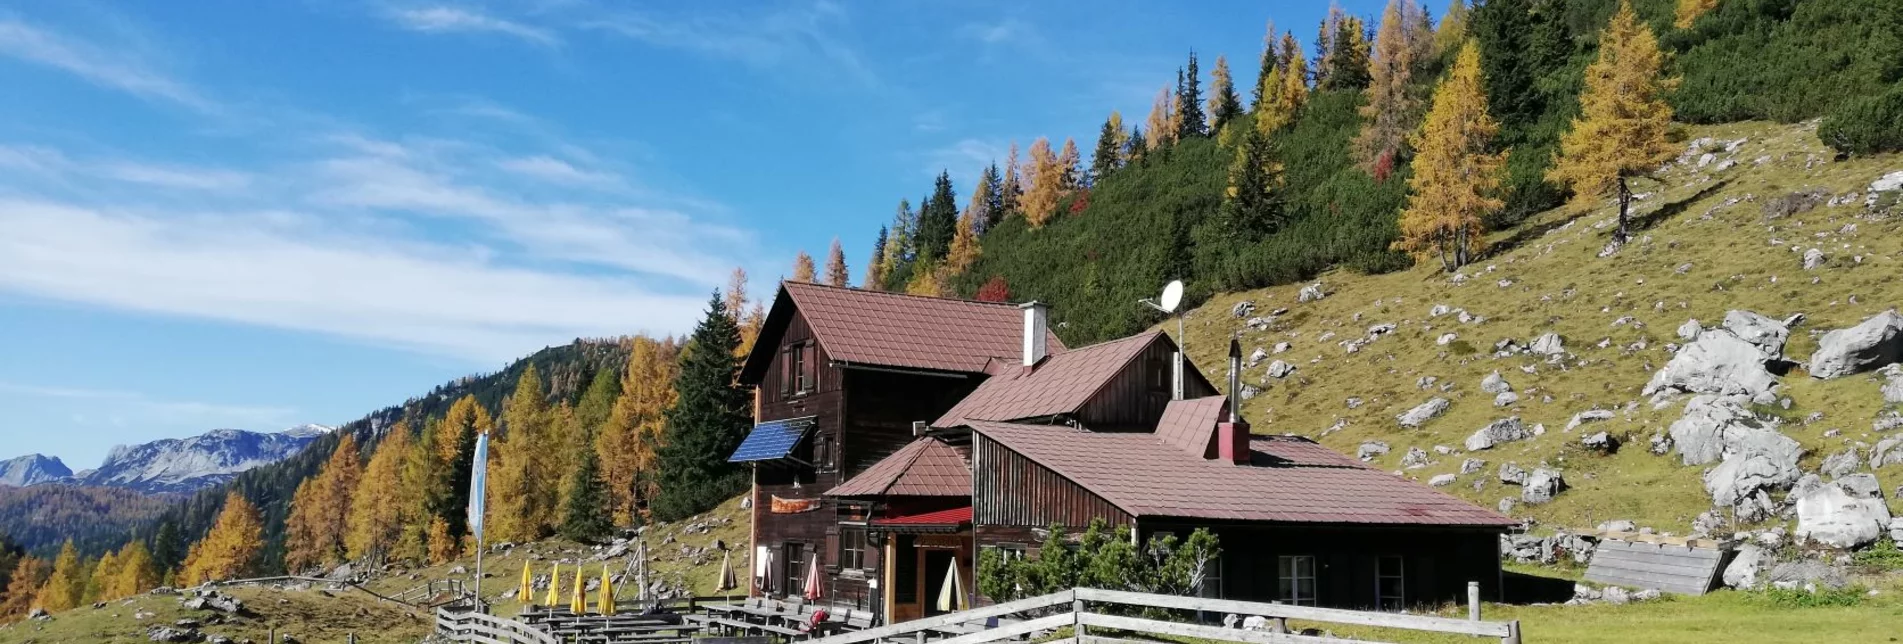 Hiking route Lovely Hut Tour to the Hochmölbing Hütte - Touren-Impression #1 | © Erlebnisregion Schladming-Dachstein